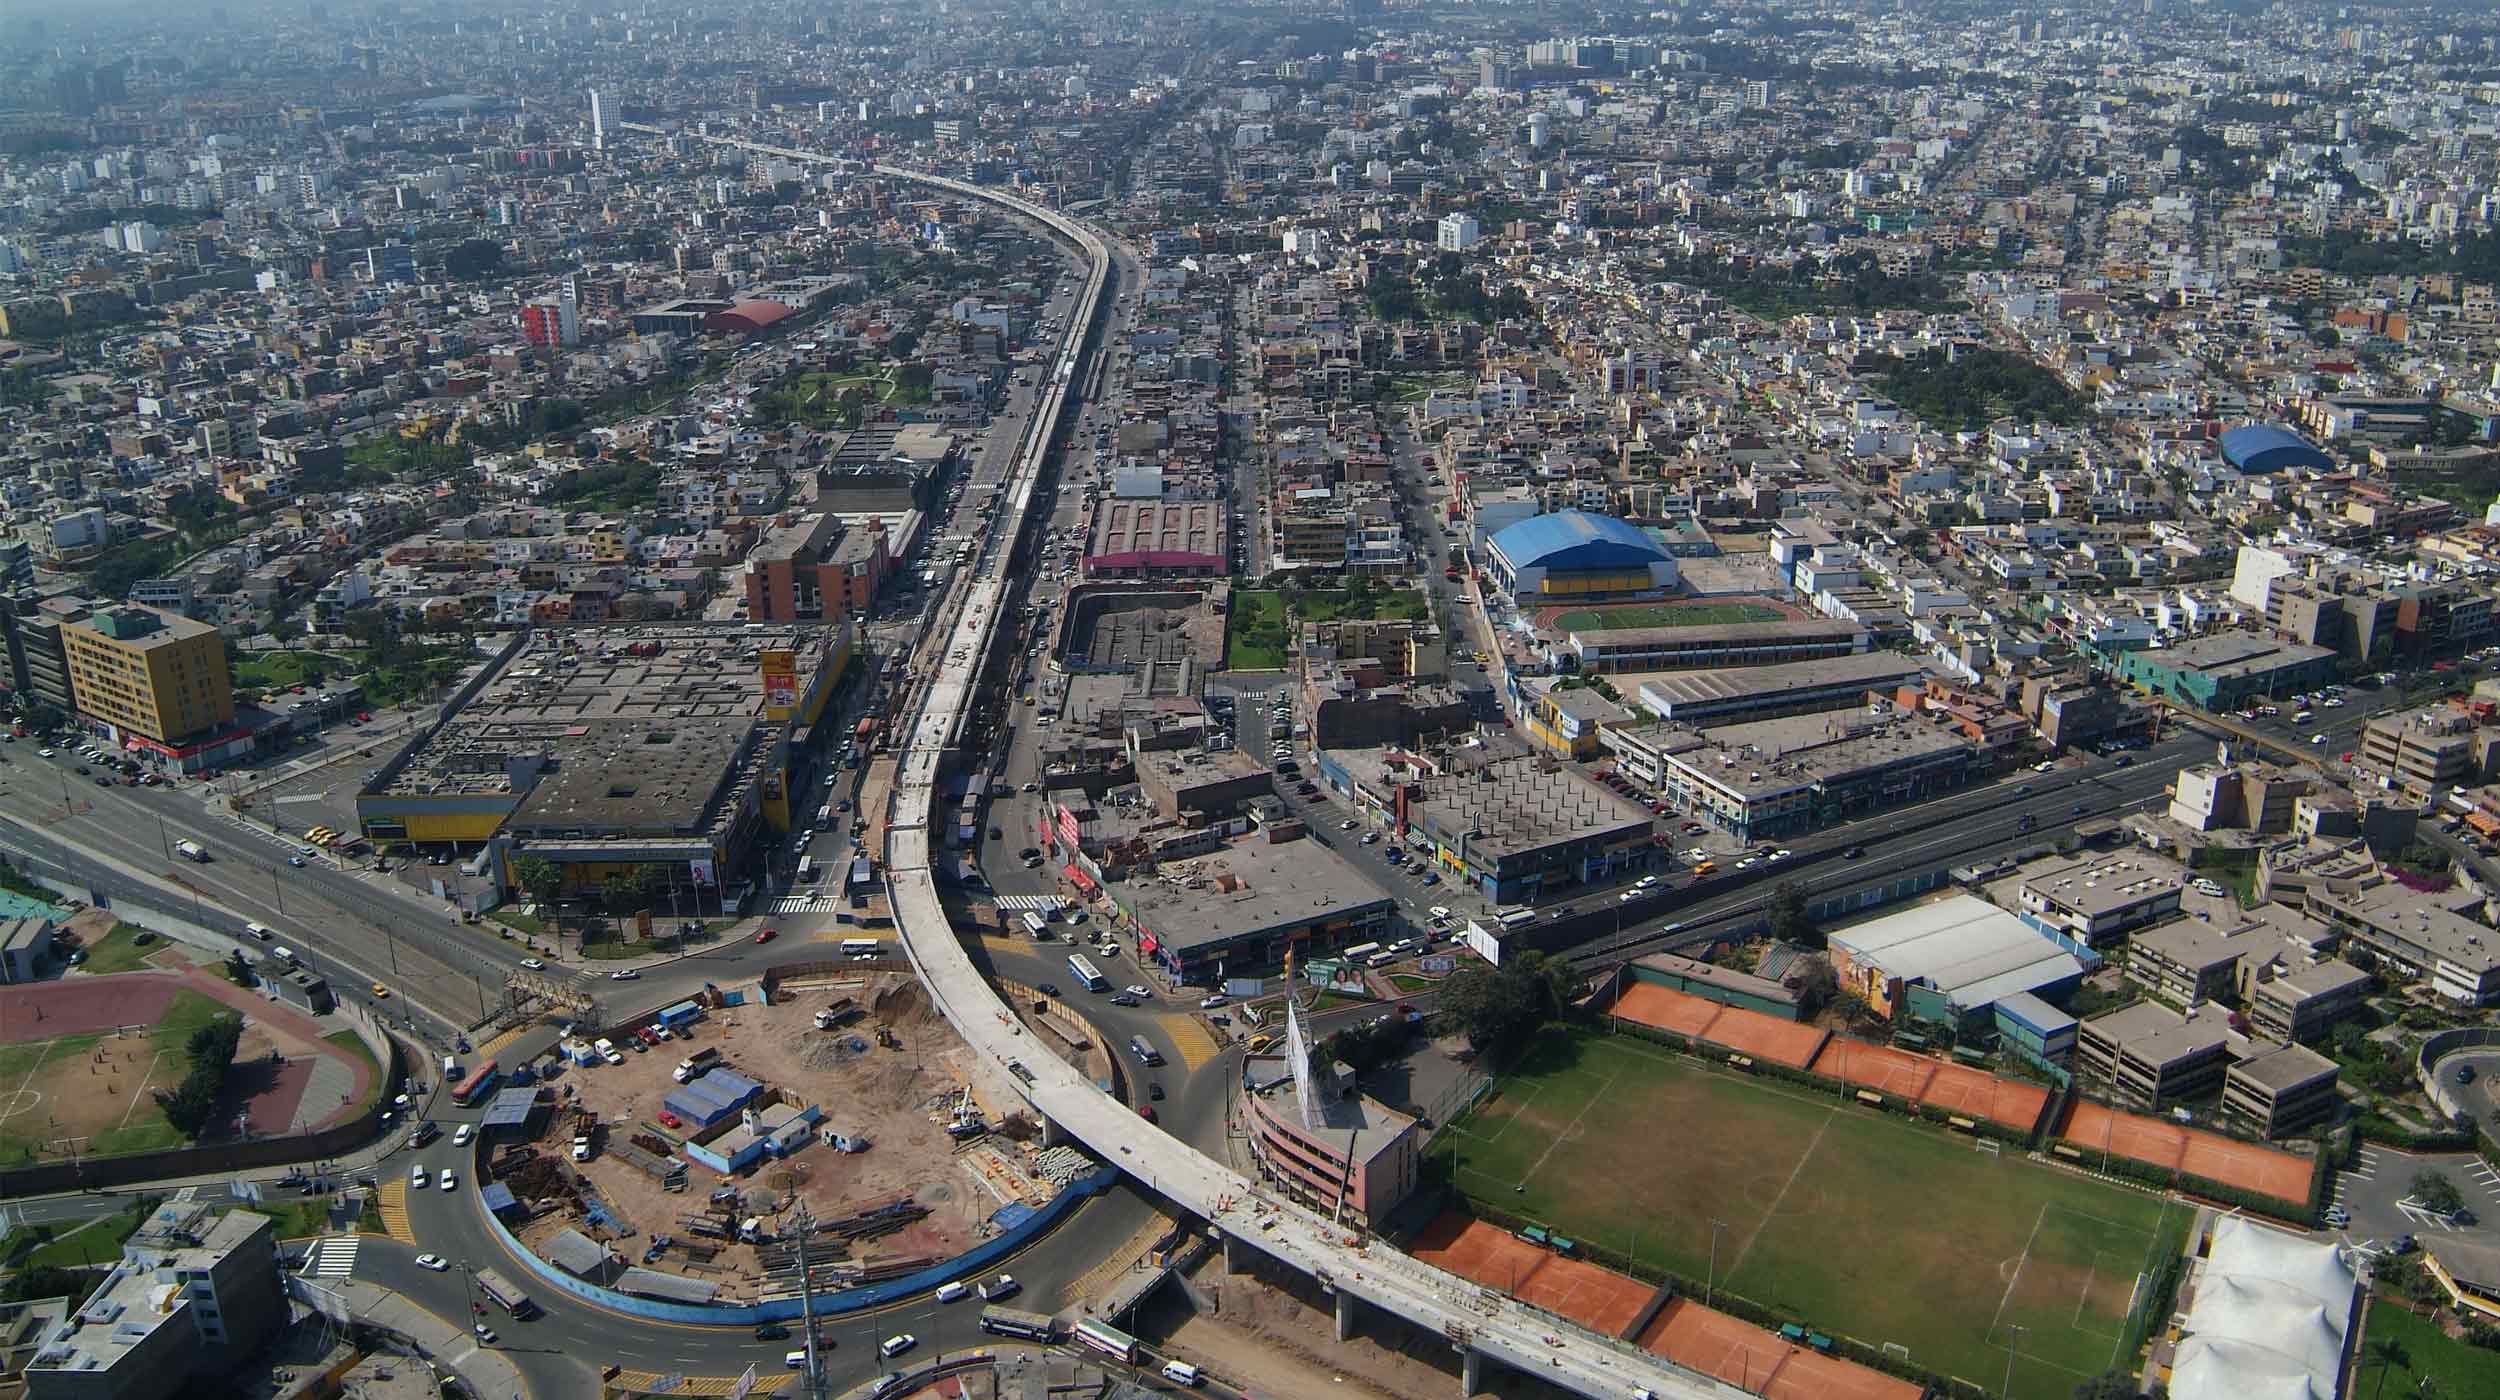 Questo progetto emblematico che ha coinvolto il comune di Lima prevede la costruzione di un viadotto sopraelevato lungo 12,5km e 8 stazioni ferroviarie.